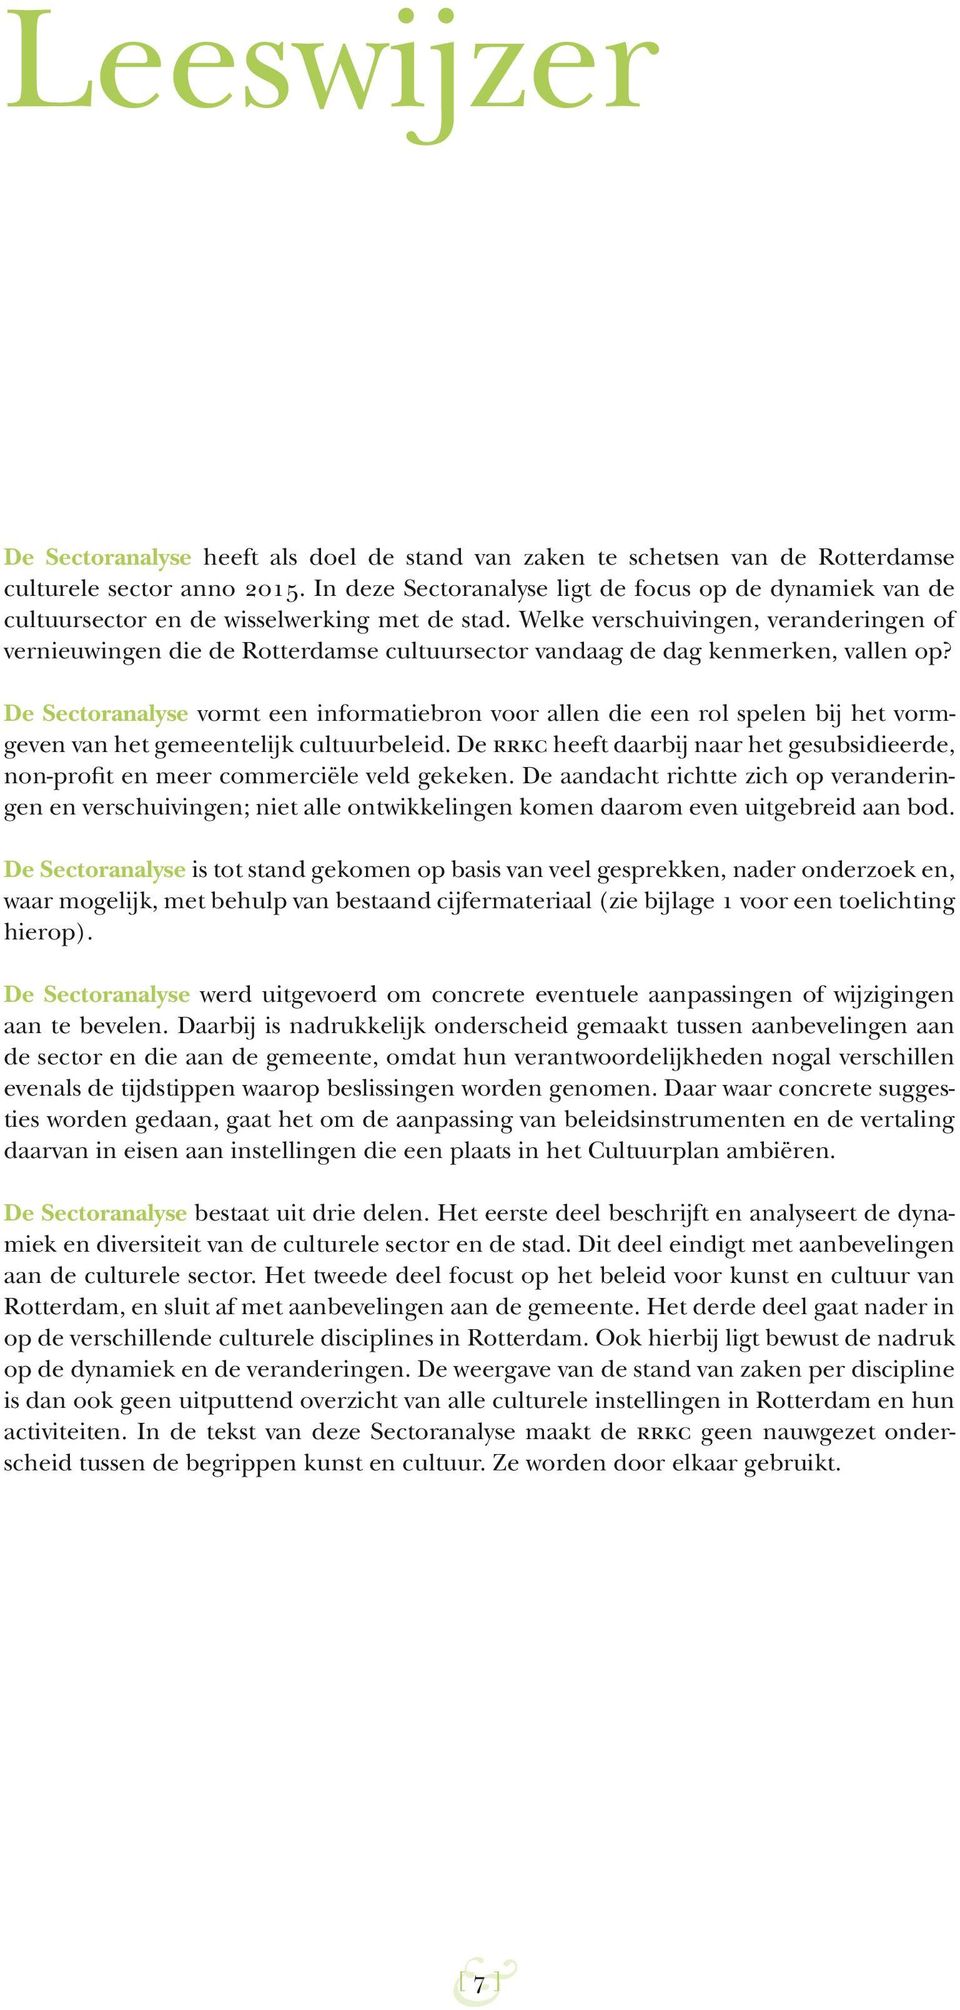 Welke verschuivingen, veranderingen of vernieuwingen die de Rotterdamse cultuursector vandaag de dag kenmerken, vallen op?